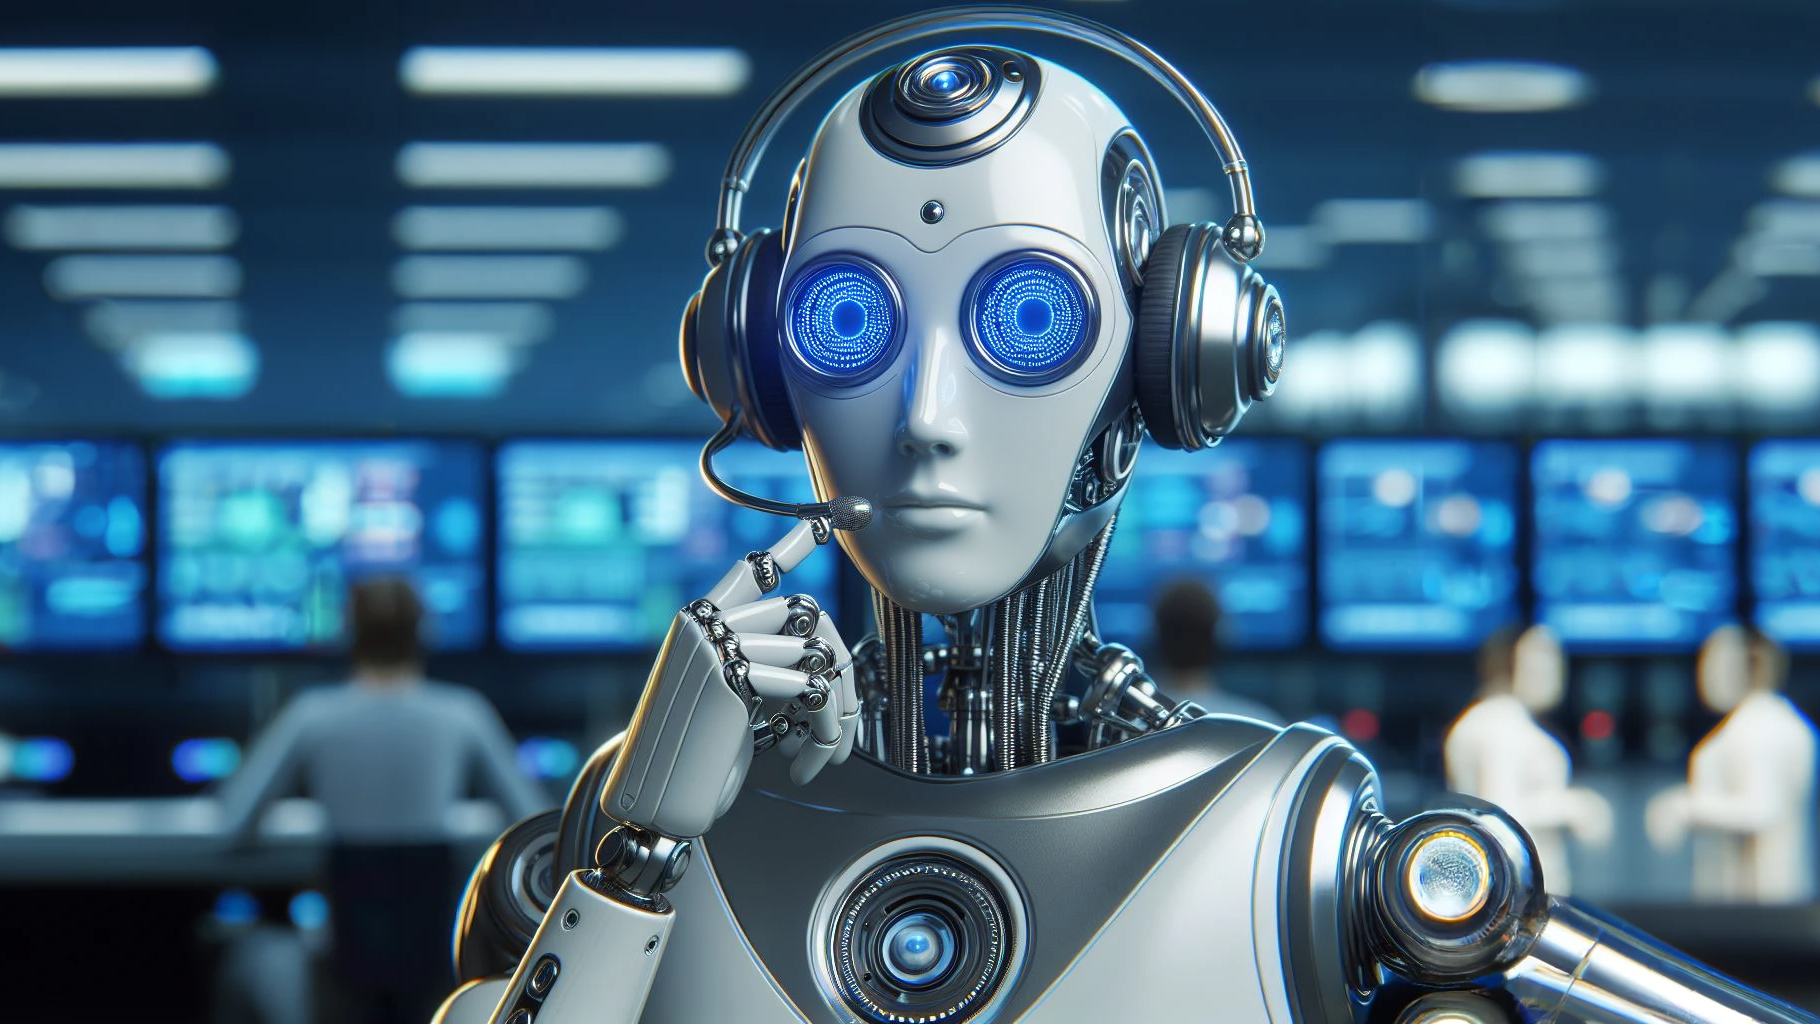 Stany Zjednoczone zakazały połączeń telefonicznych z robotami, których głos został wygenerowany przez sztuczną inteligencję